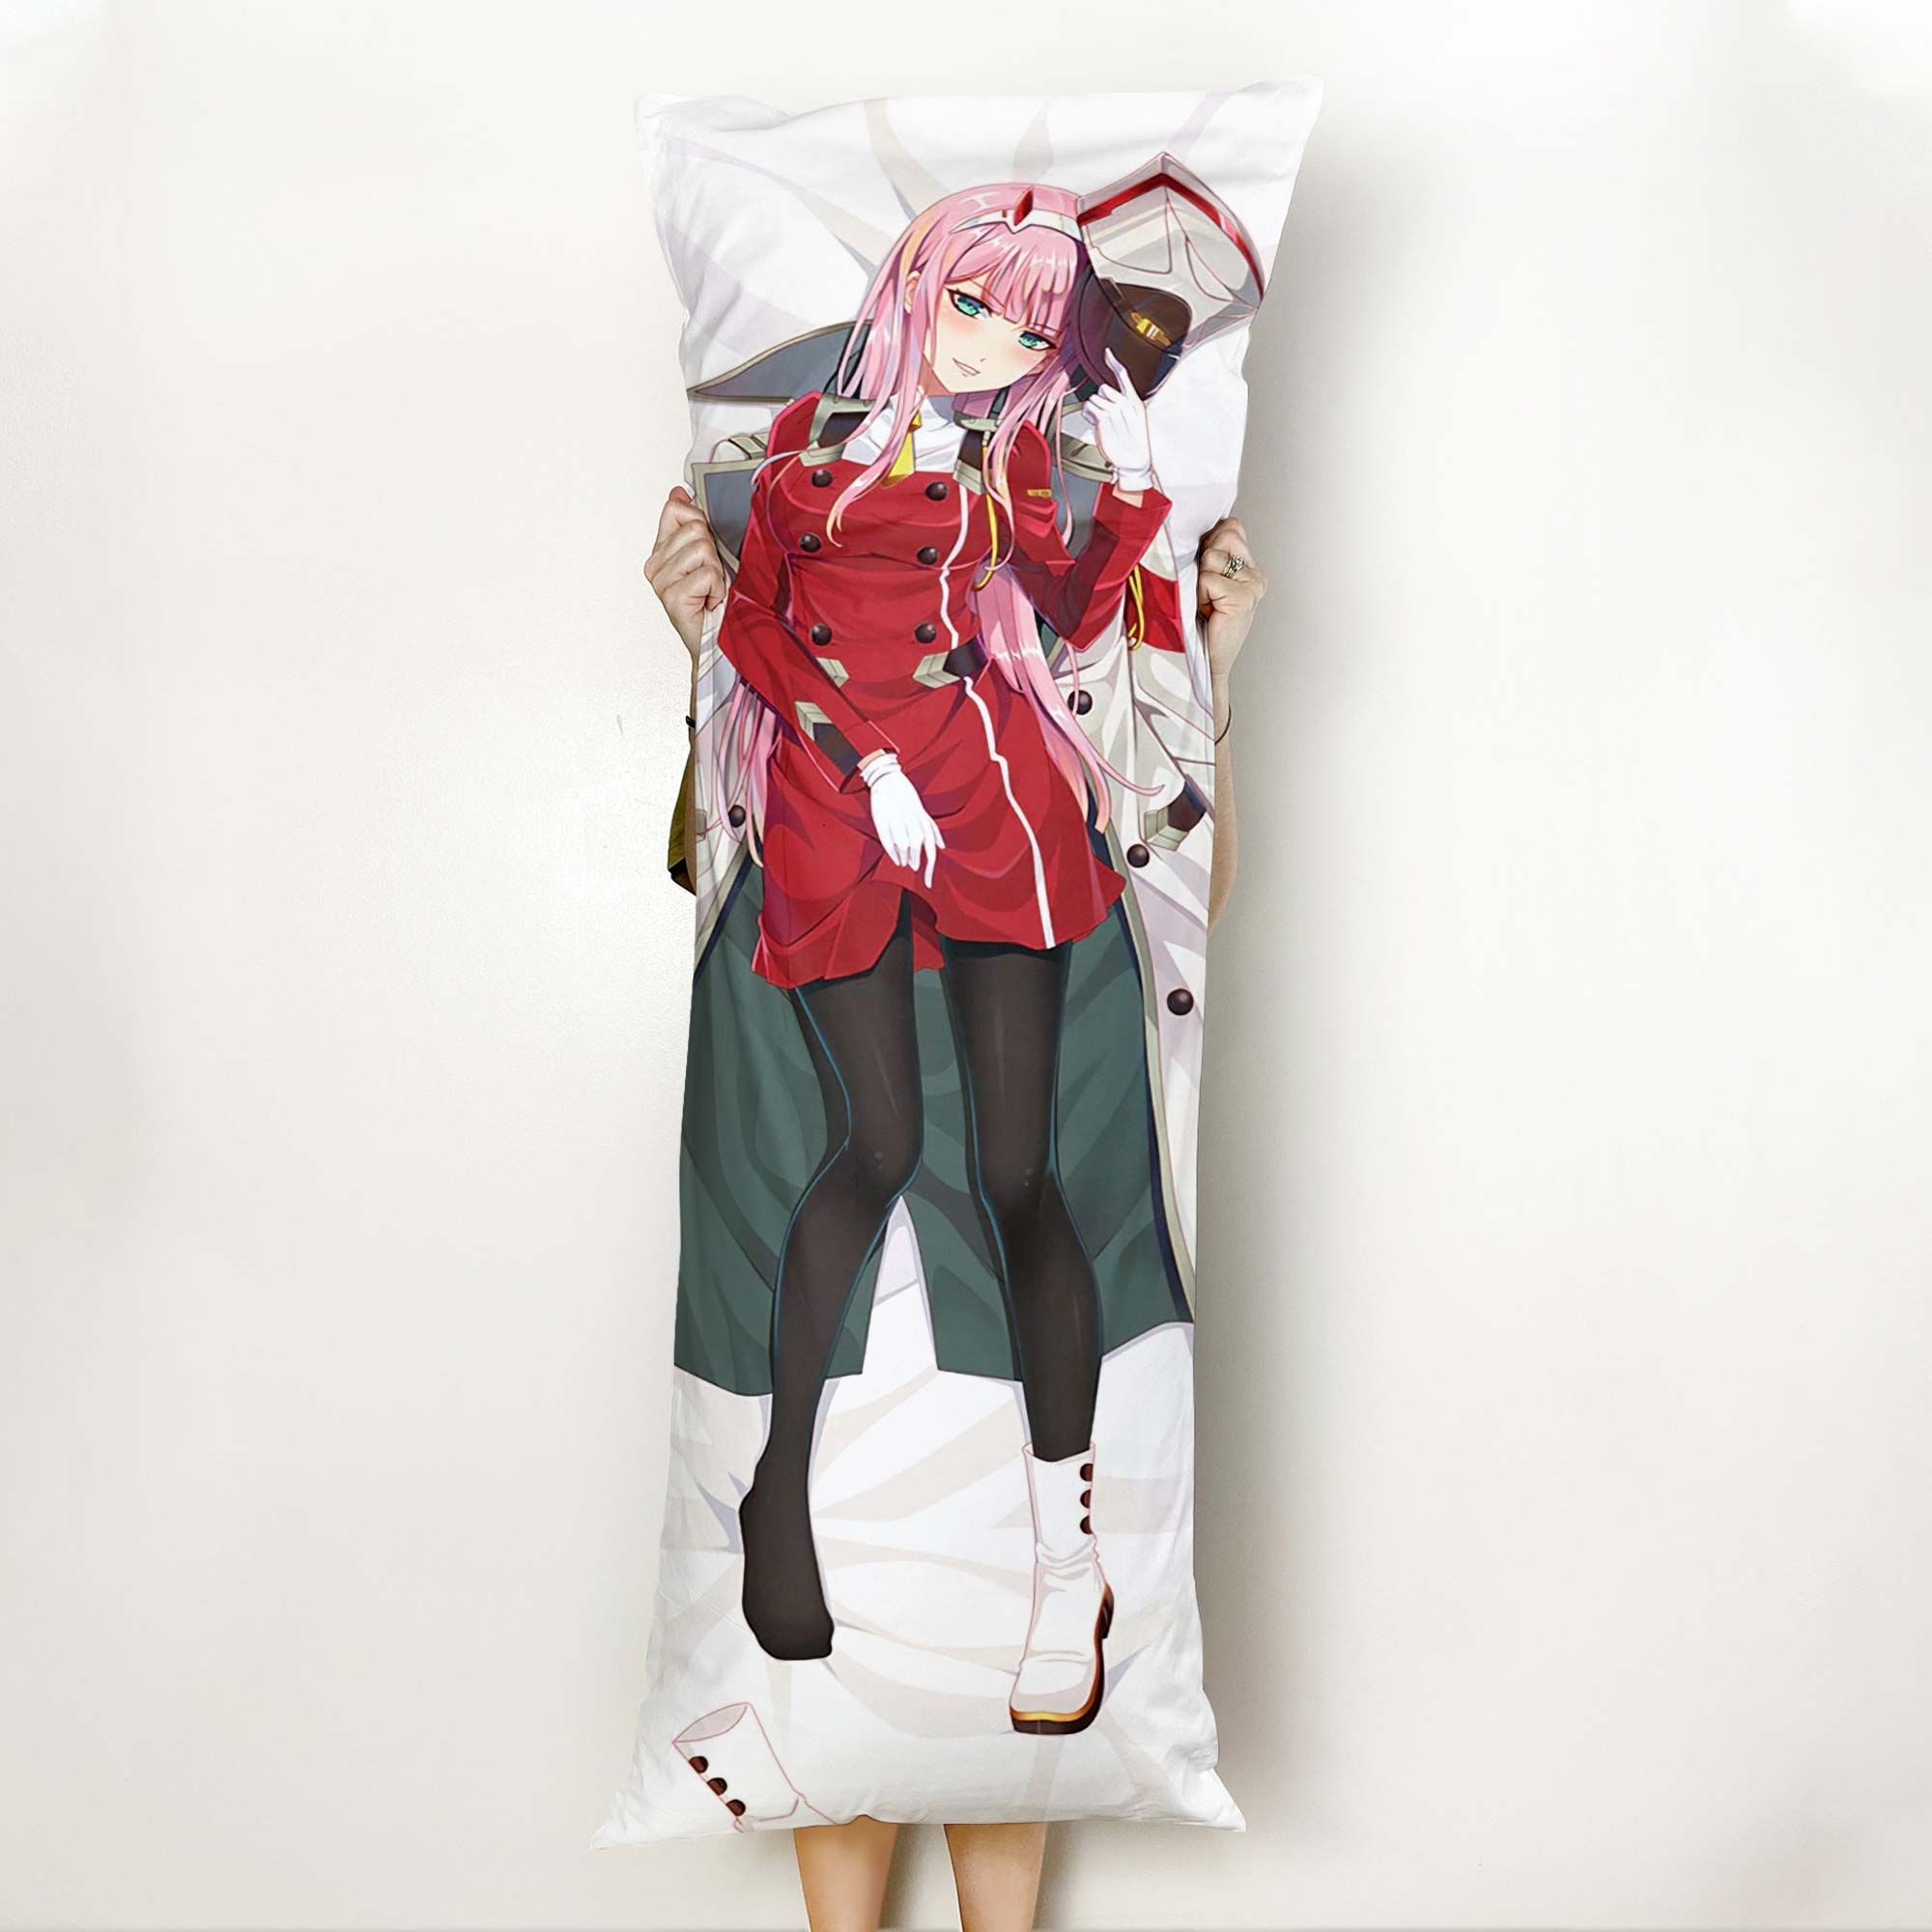 Zero Two Body Pillow Cover Anime Gifts Idea For Otaku Girl Official Merch GO0110